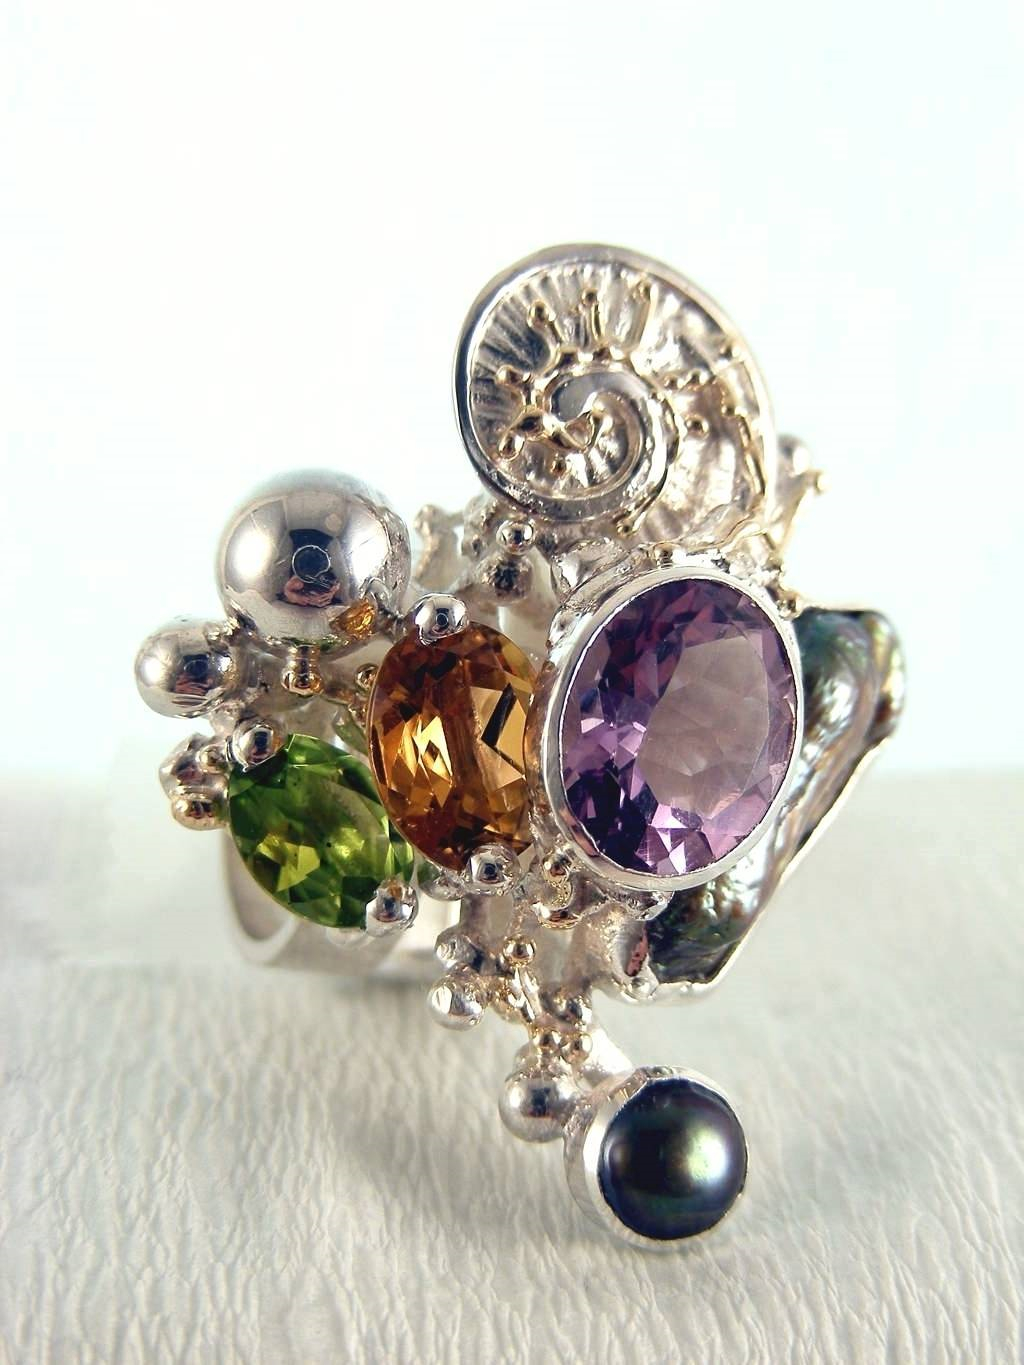 módní šperky, modní styl, sběratelská položka, šperky vyrobené ze stříbra a zlata, olivín, ametyst, granát, citrín, perla, Gregory Pyra Piro prstýnek čís. 1565